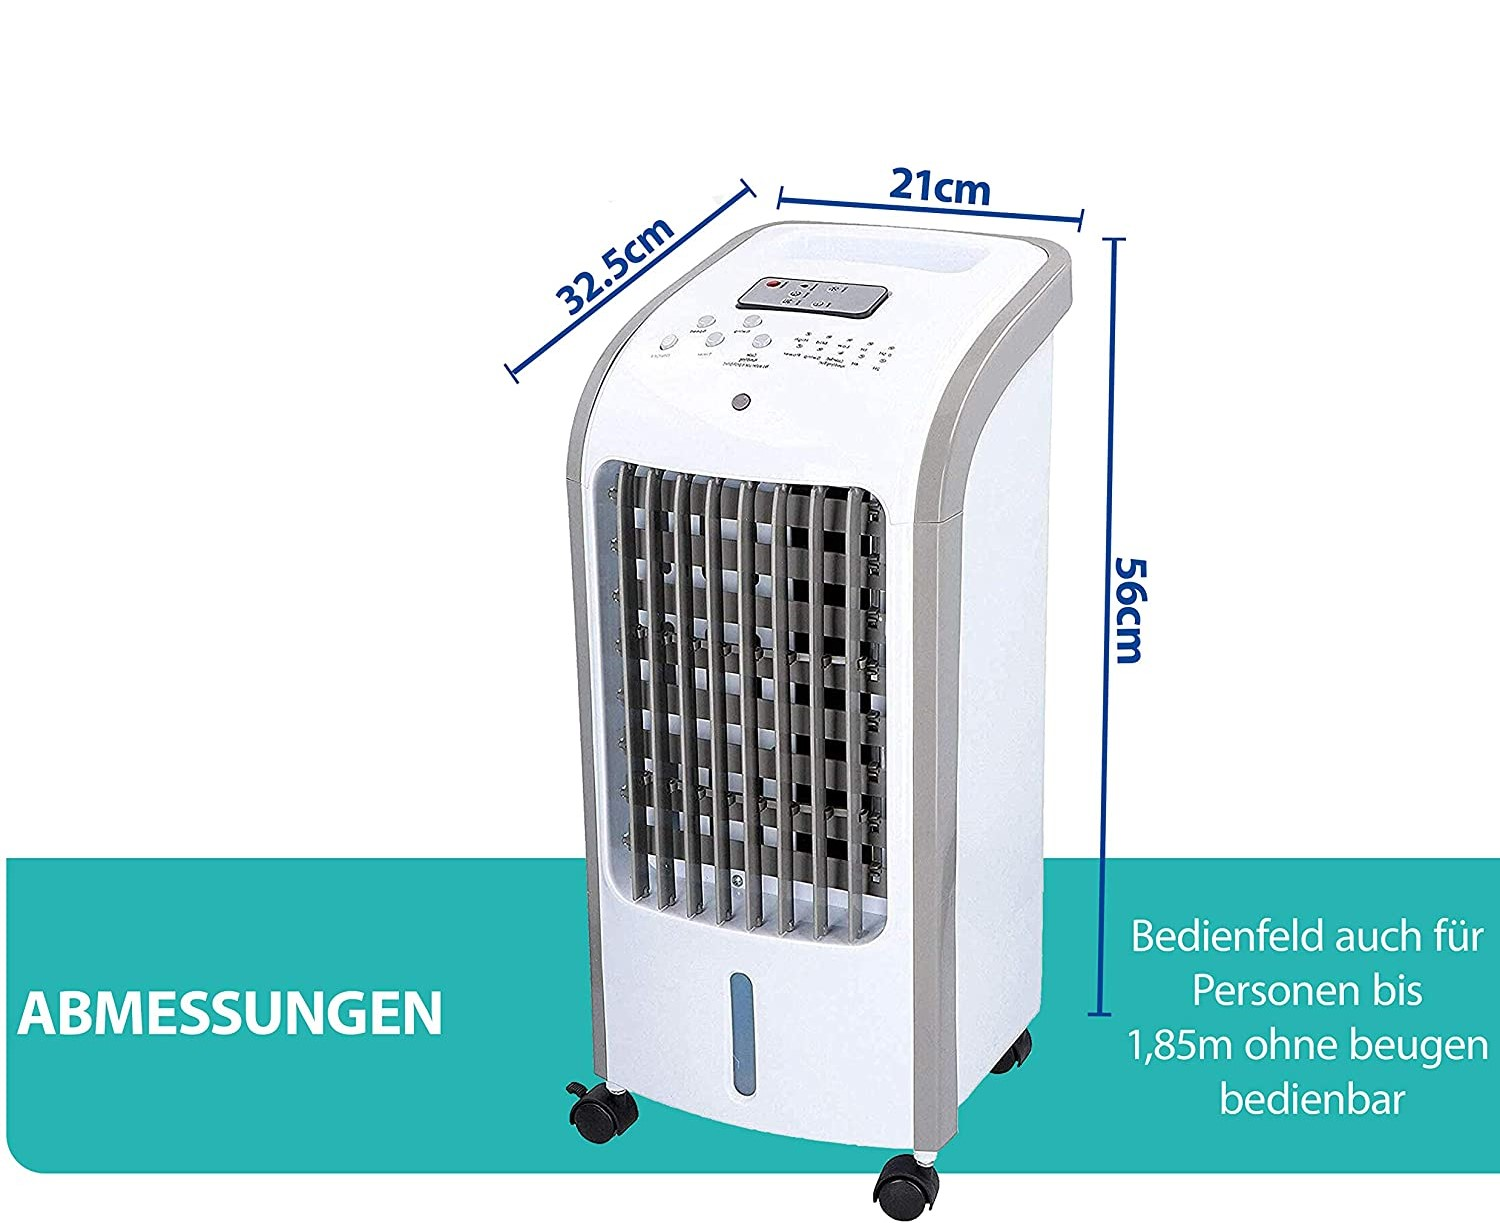 35 Klimagerät JUNG Aircooler COMMODO Weiß A+) m², (Max. Raumgröße: EEK: